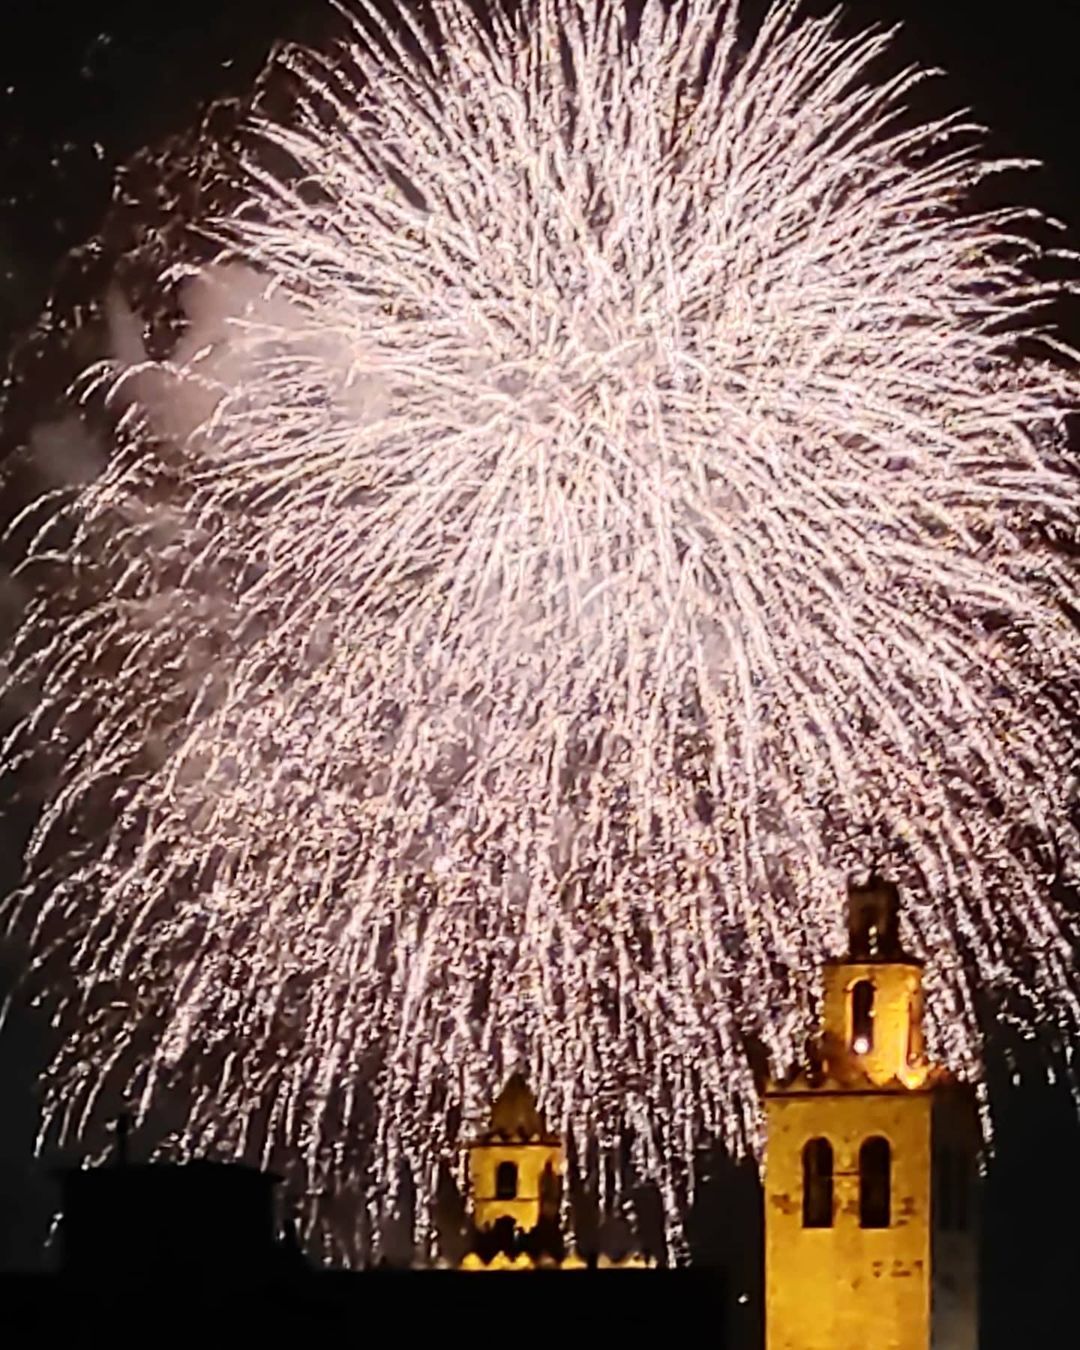  'Final de festa! Fins l'any que ve' - feta a Sant Cugat. FOTO: @dariusbruna